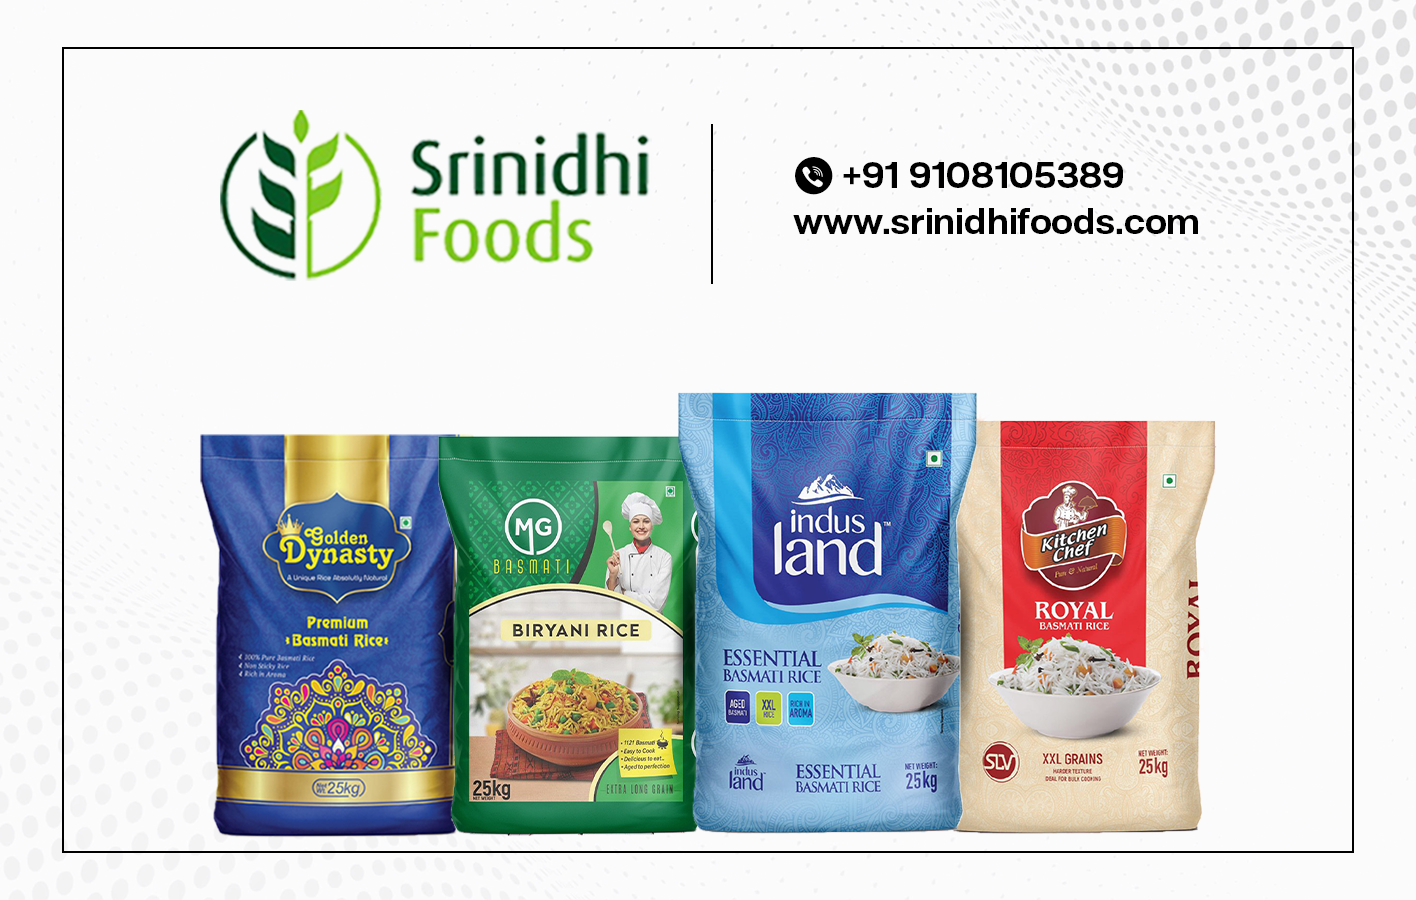 SRINIDHI FOODS